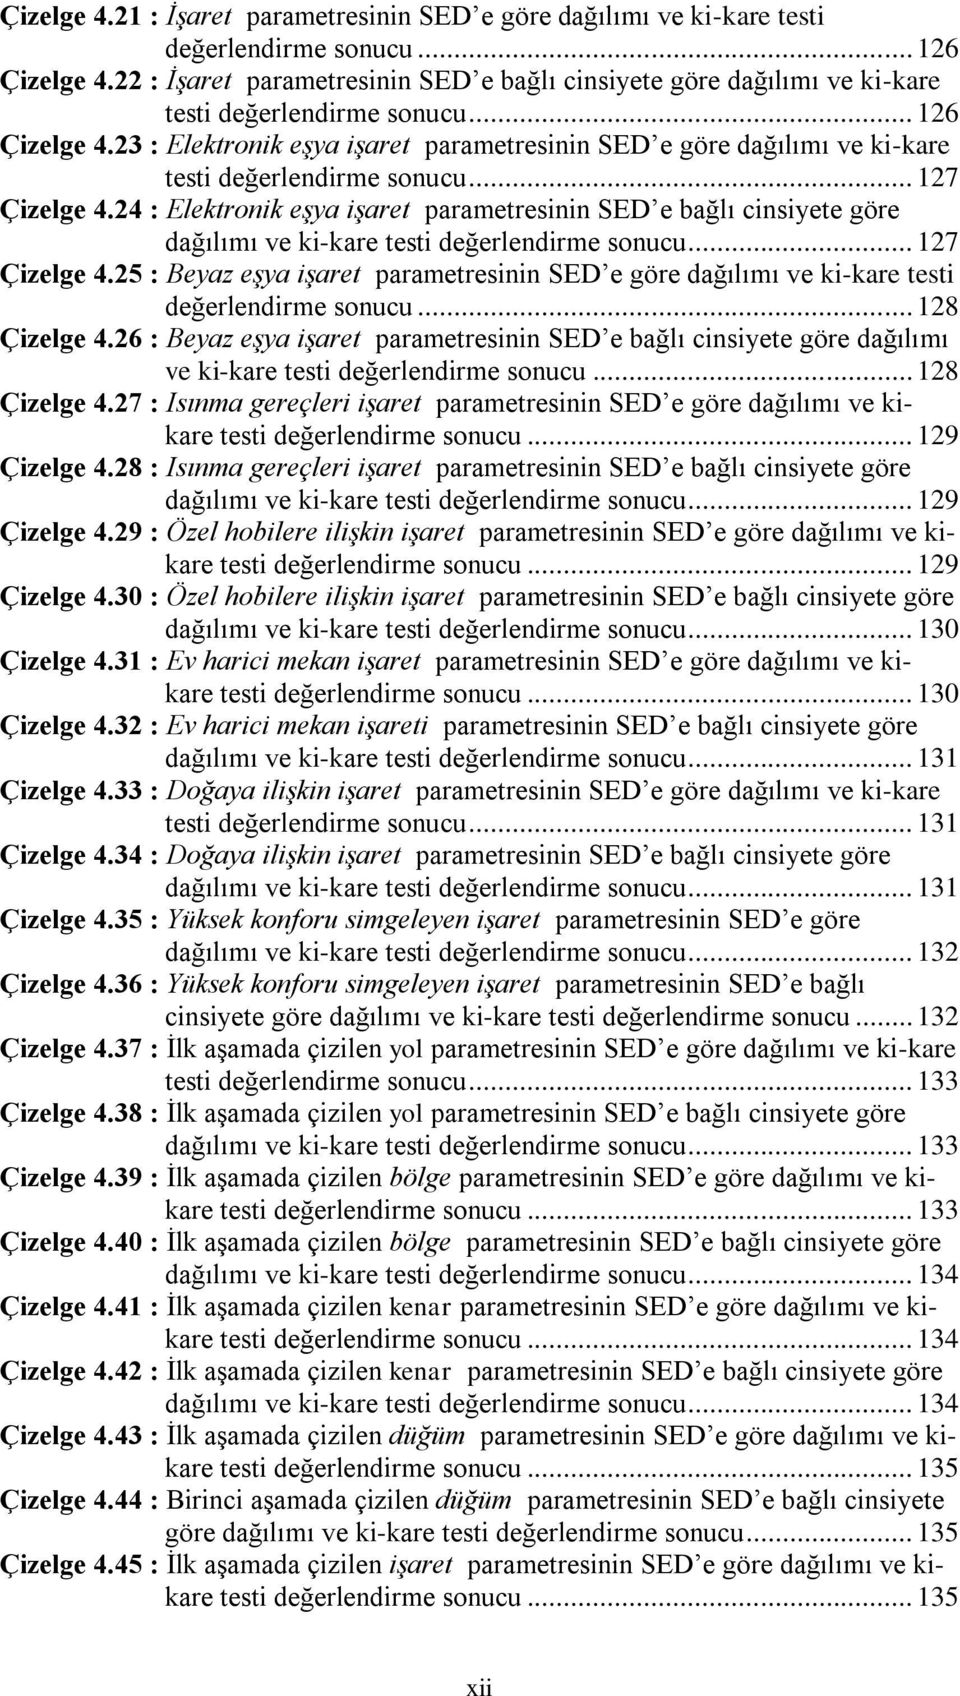 23 : Elektronik eģya iģaret parametresinin SED e göre dağılımı ve ki-kare testi değerlendirme sonucu... 127 Çizelge 4.